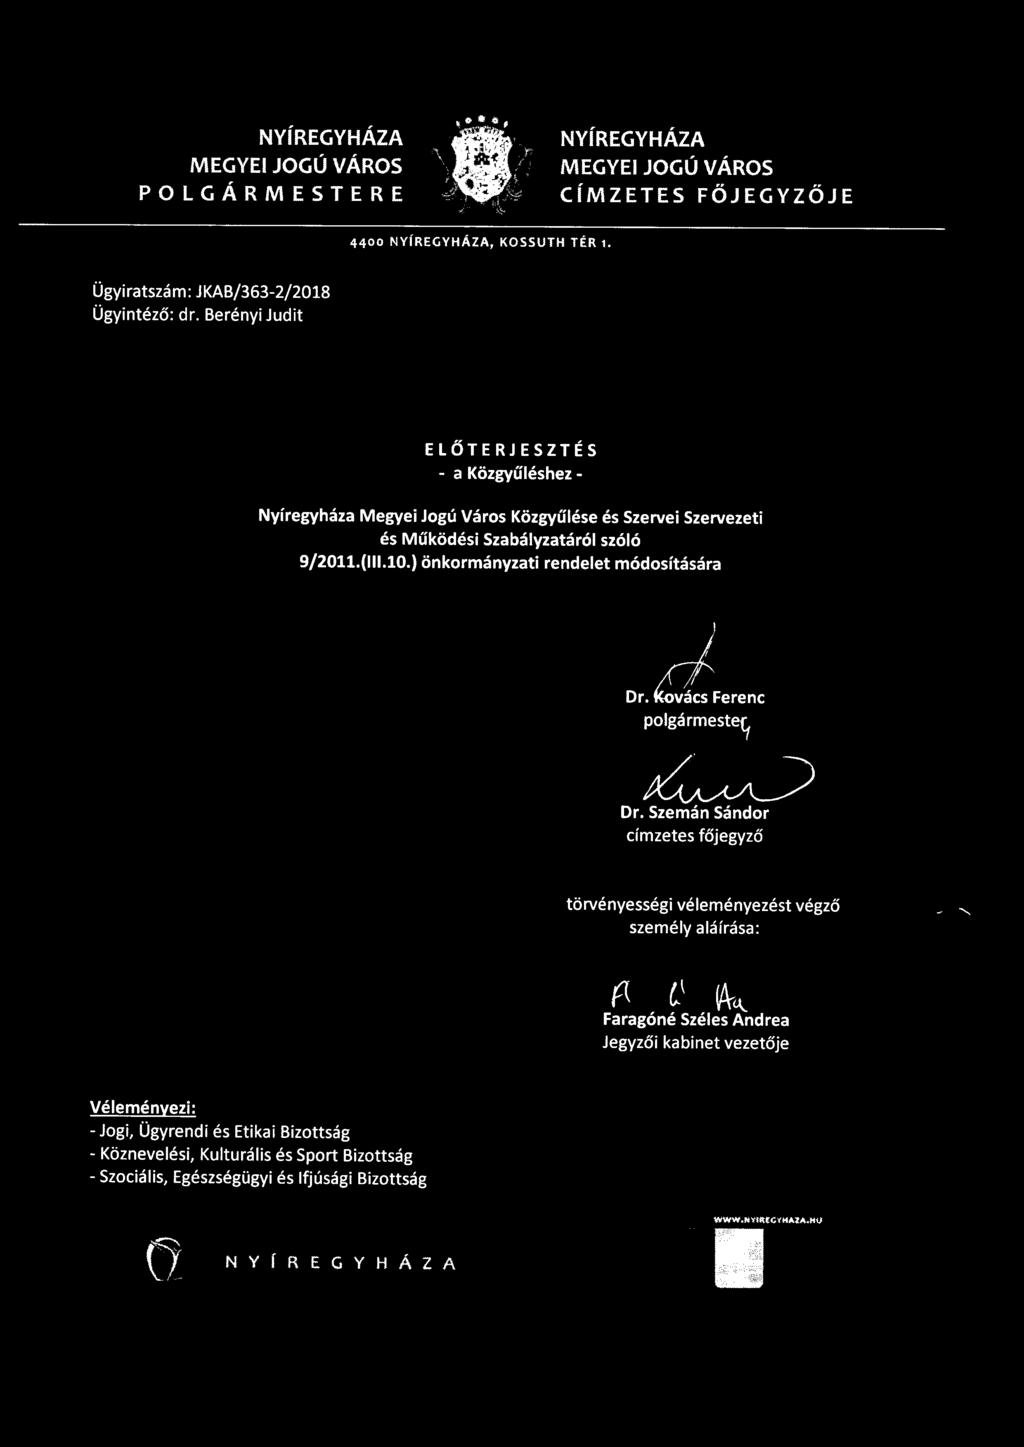 ) önkormányzati rendelet módosítására ~~~L) Dr. Szemán Sándor címzetes főjegyző törvényességi véleményezést végző személy aláírása: p l\ ~t\.